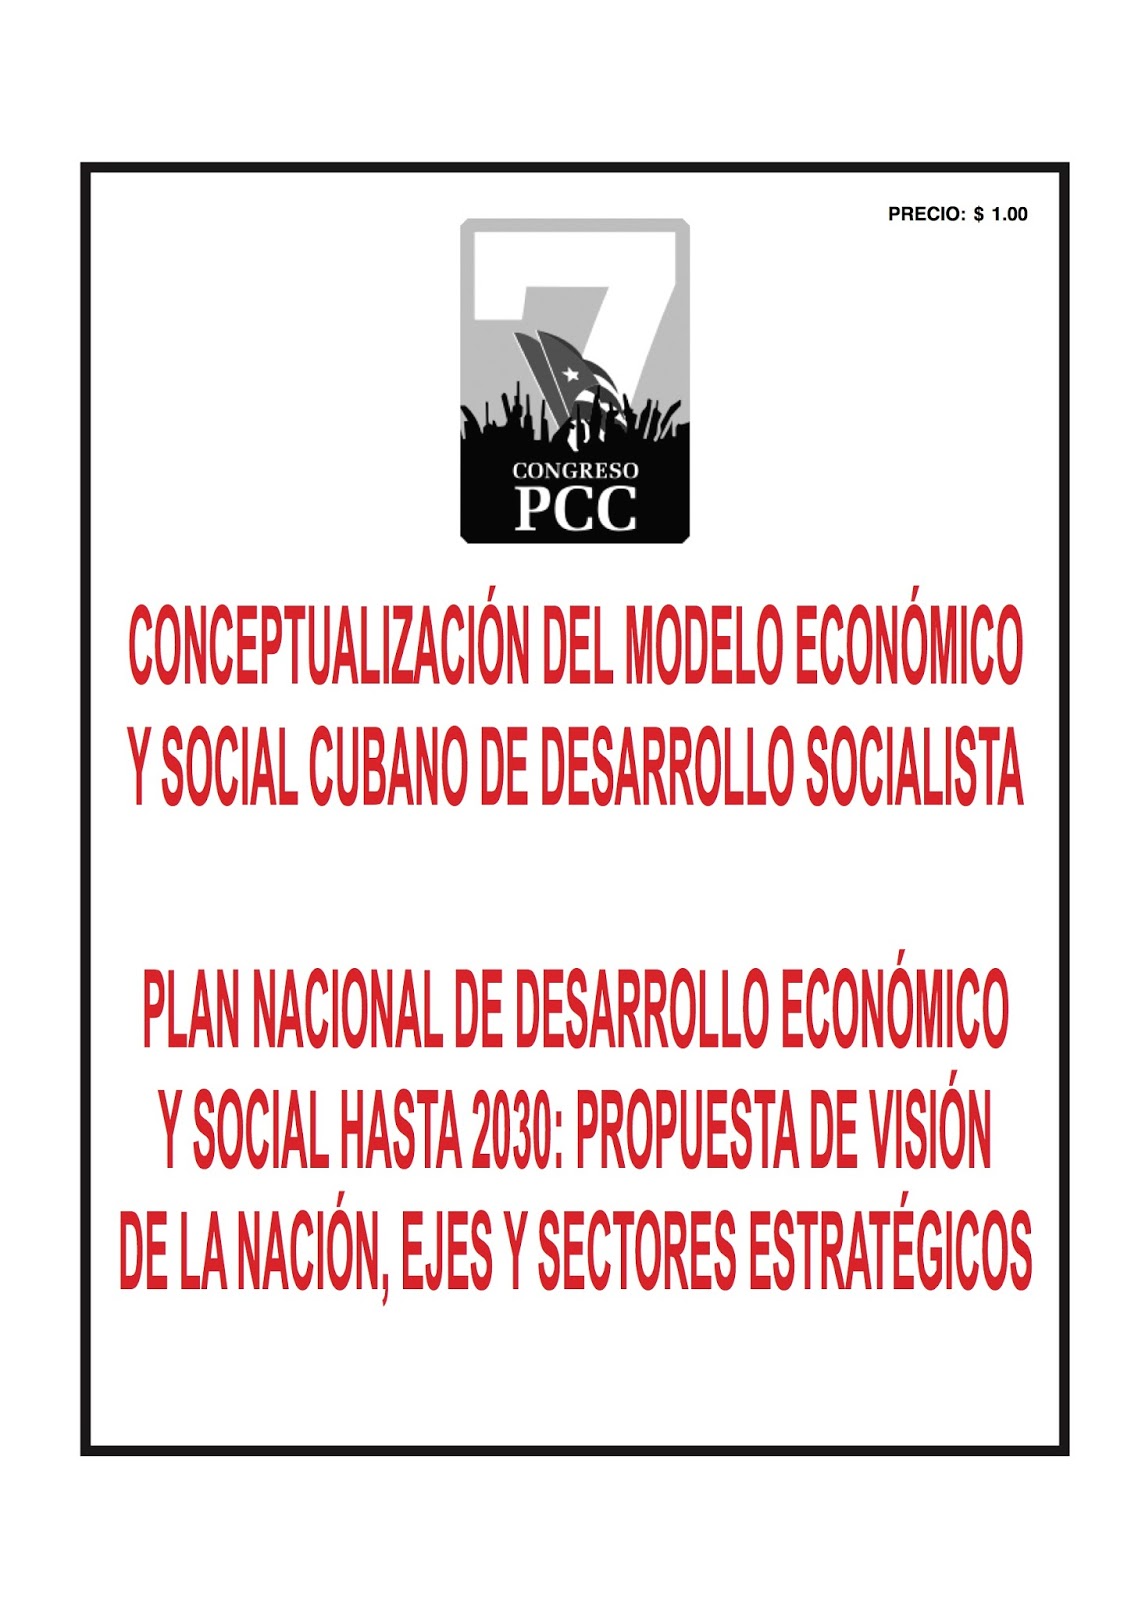 Larry Catá Backer, Background Brief: “Conceptualización del modelo  económico y social Cubano de desarrollo socialista”. – The Coalition for  Peace and Ethics